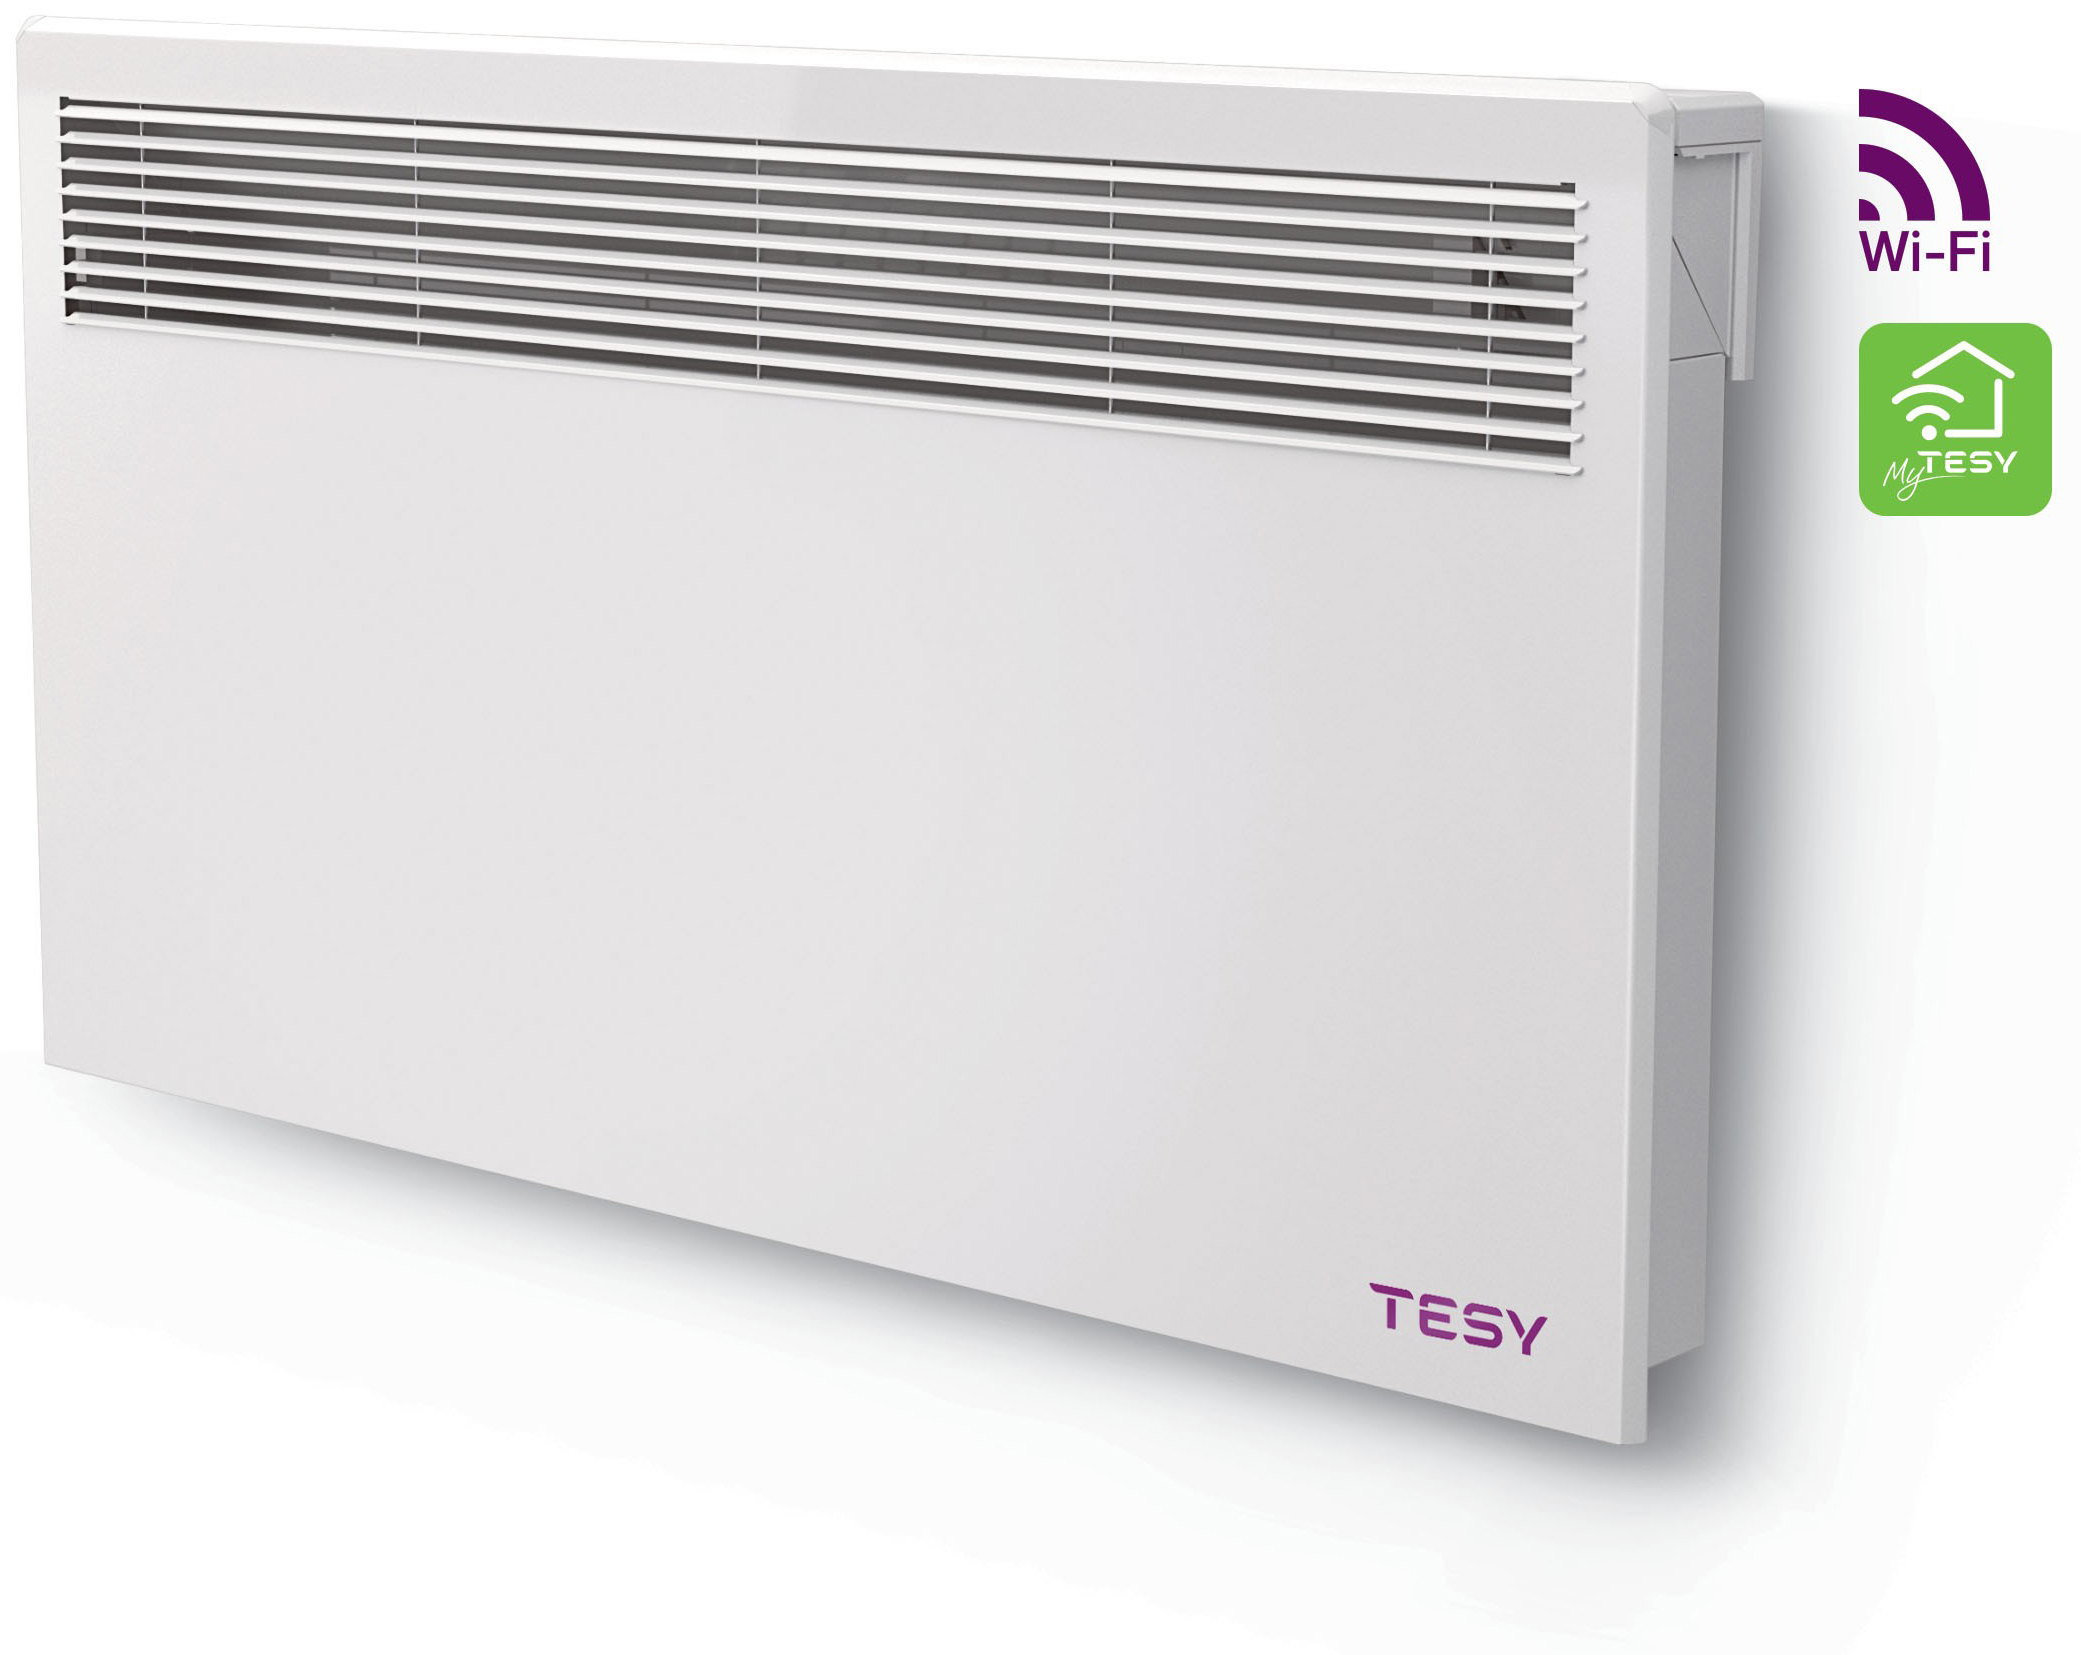 Отзывы электроконвектор tesy мощностью 2000 вт / 2 квт Tesy CN 051 200 EI CLOUD W в Украине